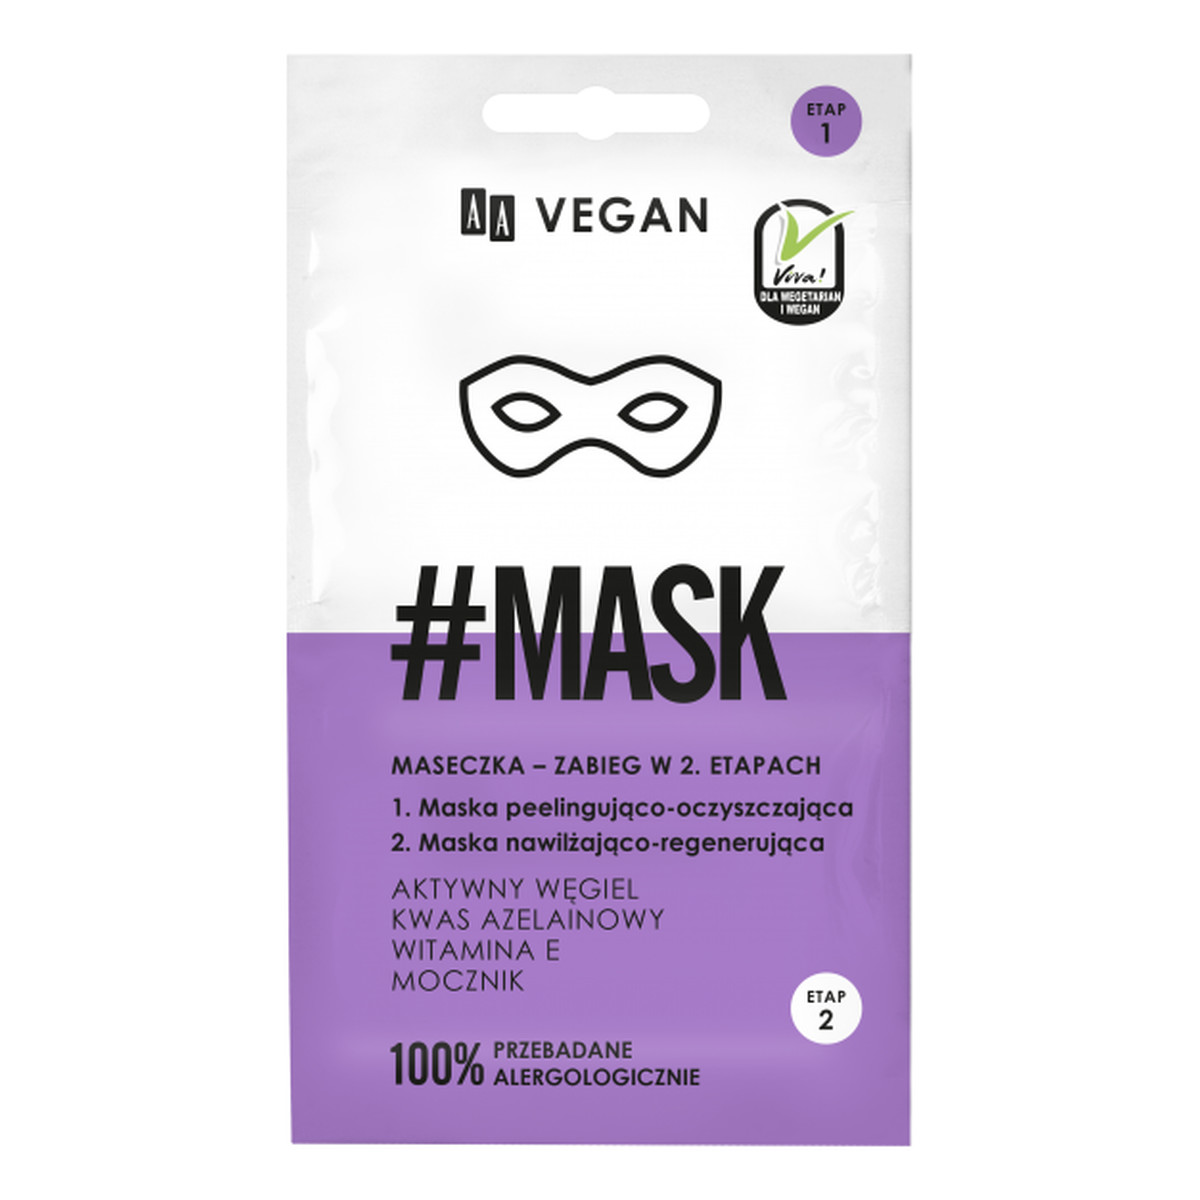 AA Vegan #Mask maseczka zabieg w 2 etapach 2x5ml 10ml